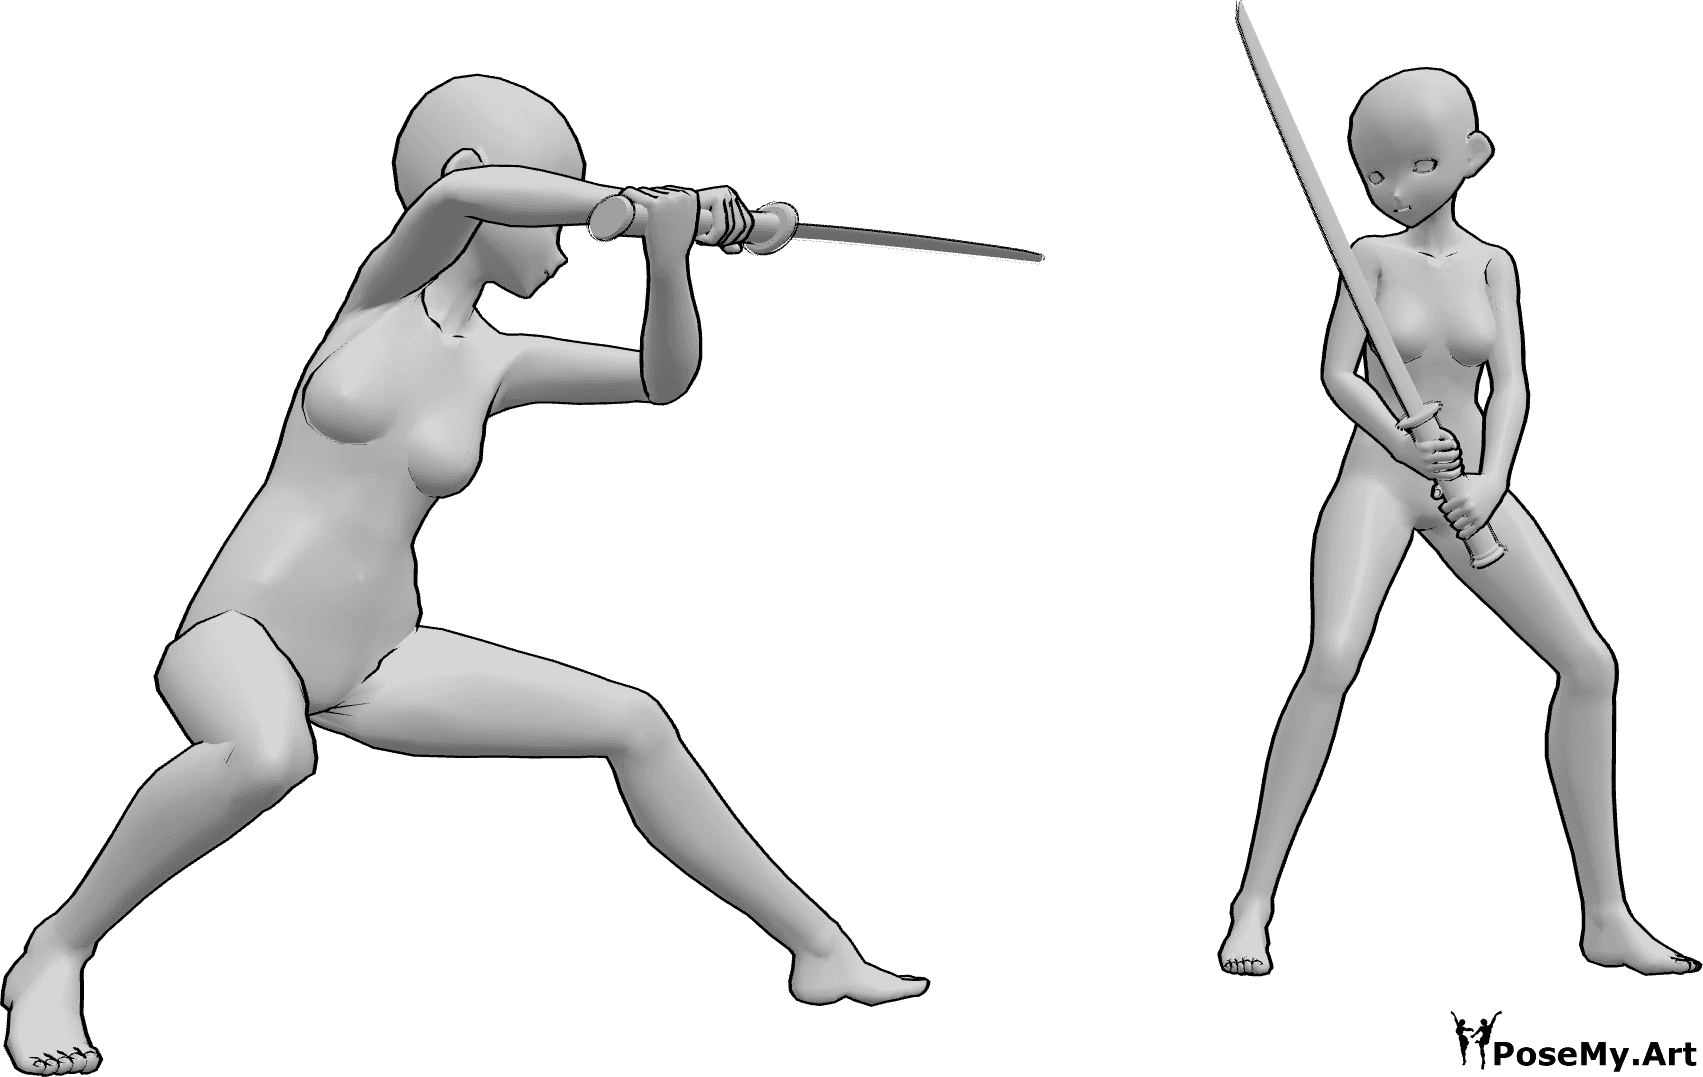 Référence des poses- Anime katana battle pose - Des femmes d'animation se battent avec des katanas, elles sont sur le point de s'attaquer l'une l'autre.